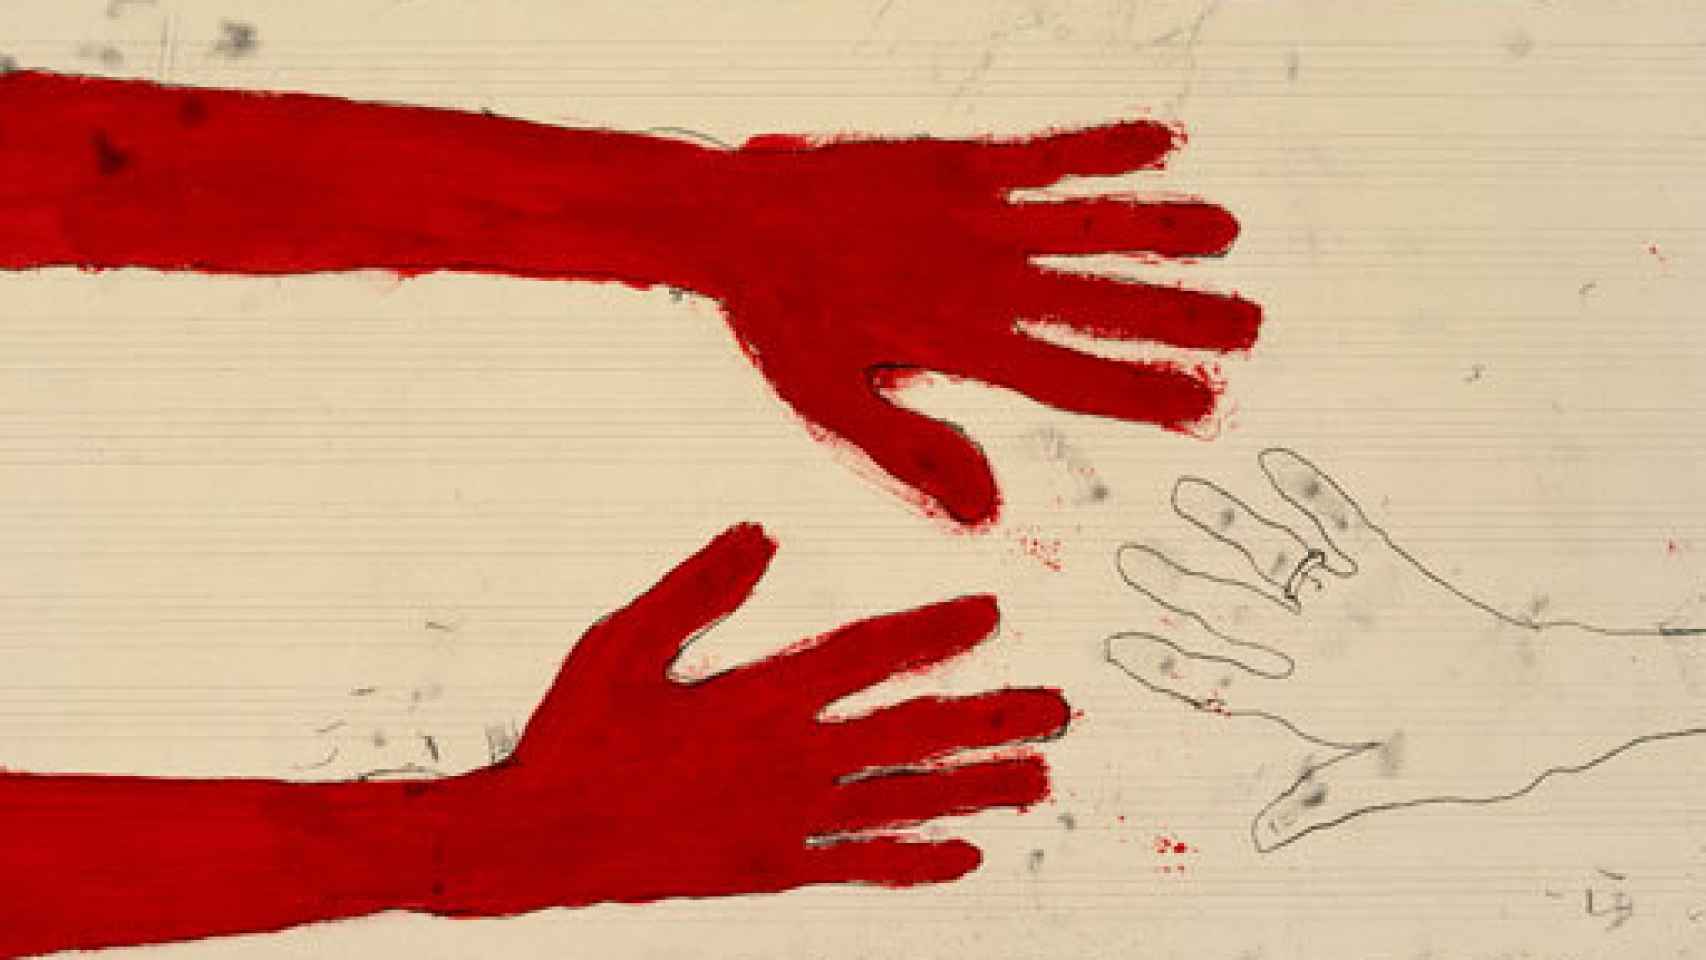 Image: Louise Bourgeois, el don de la sublimación